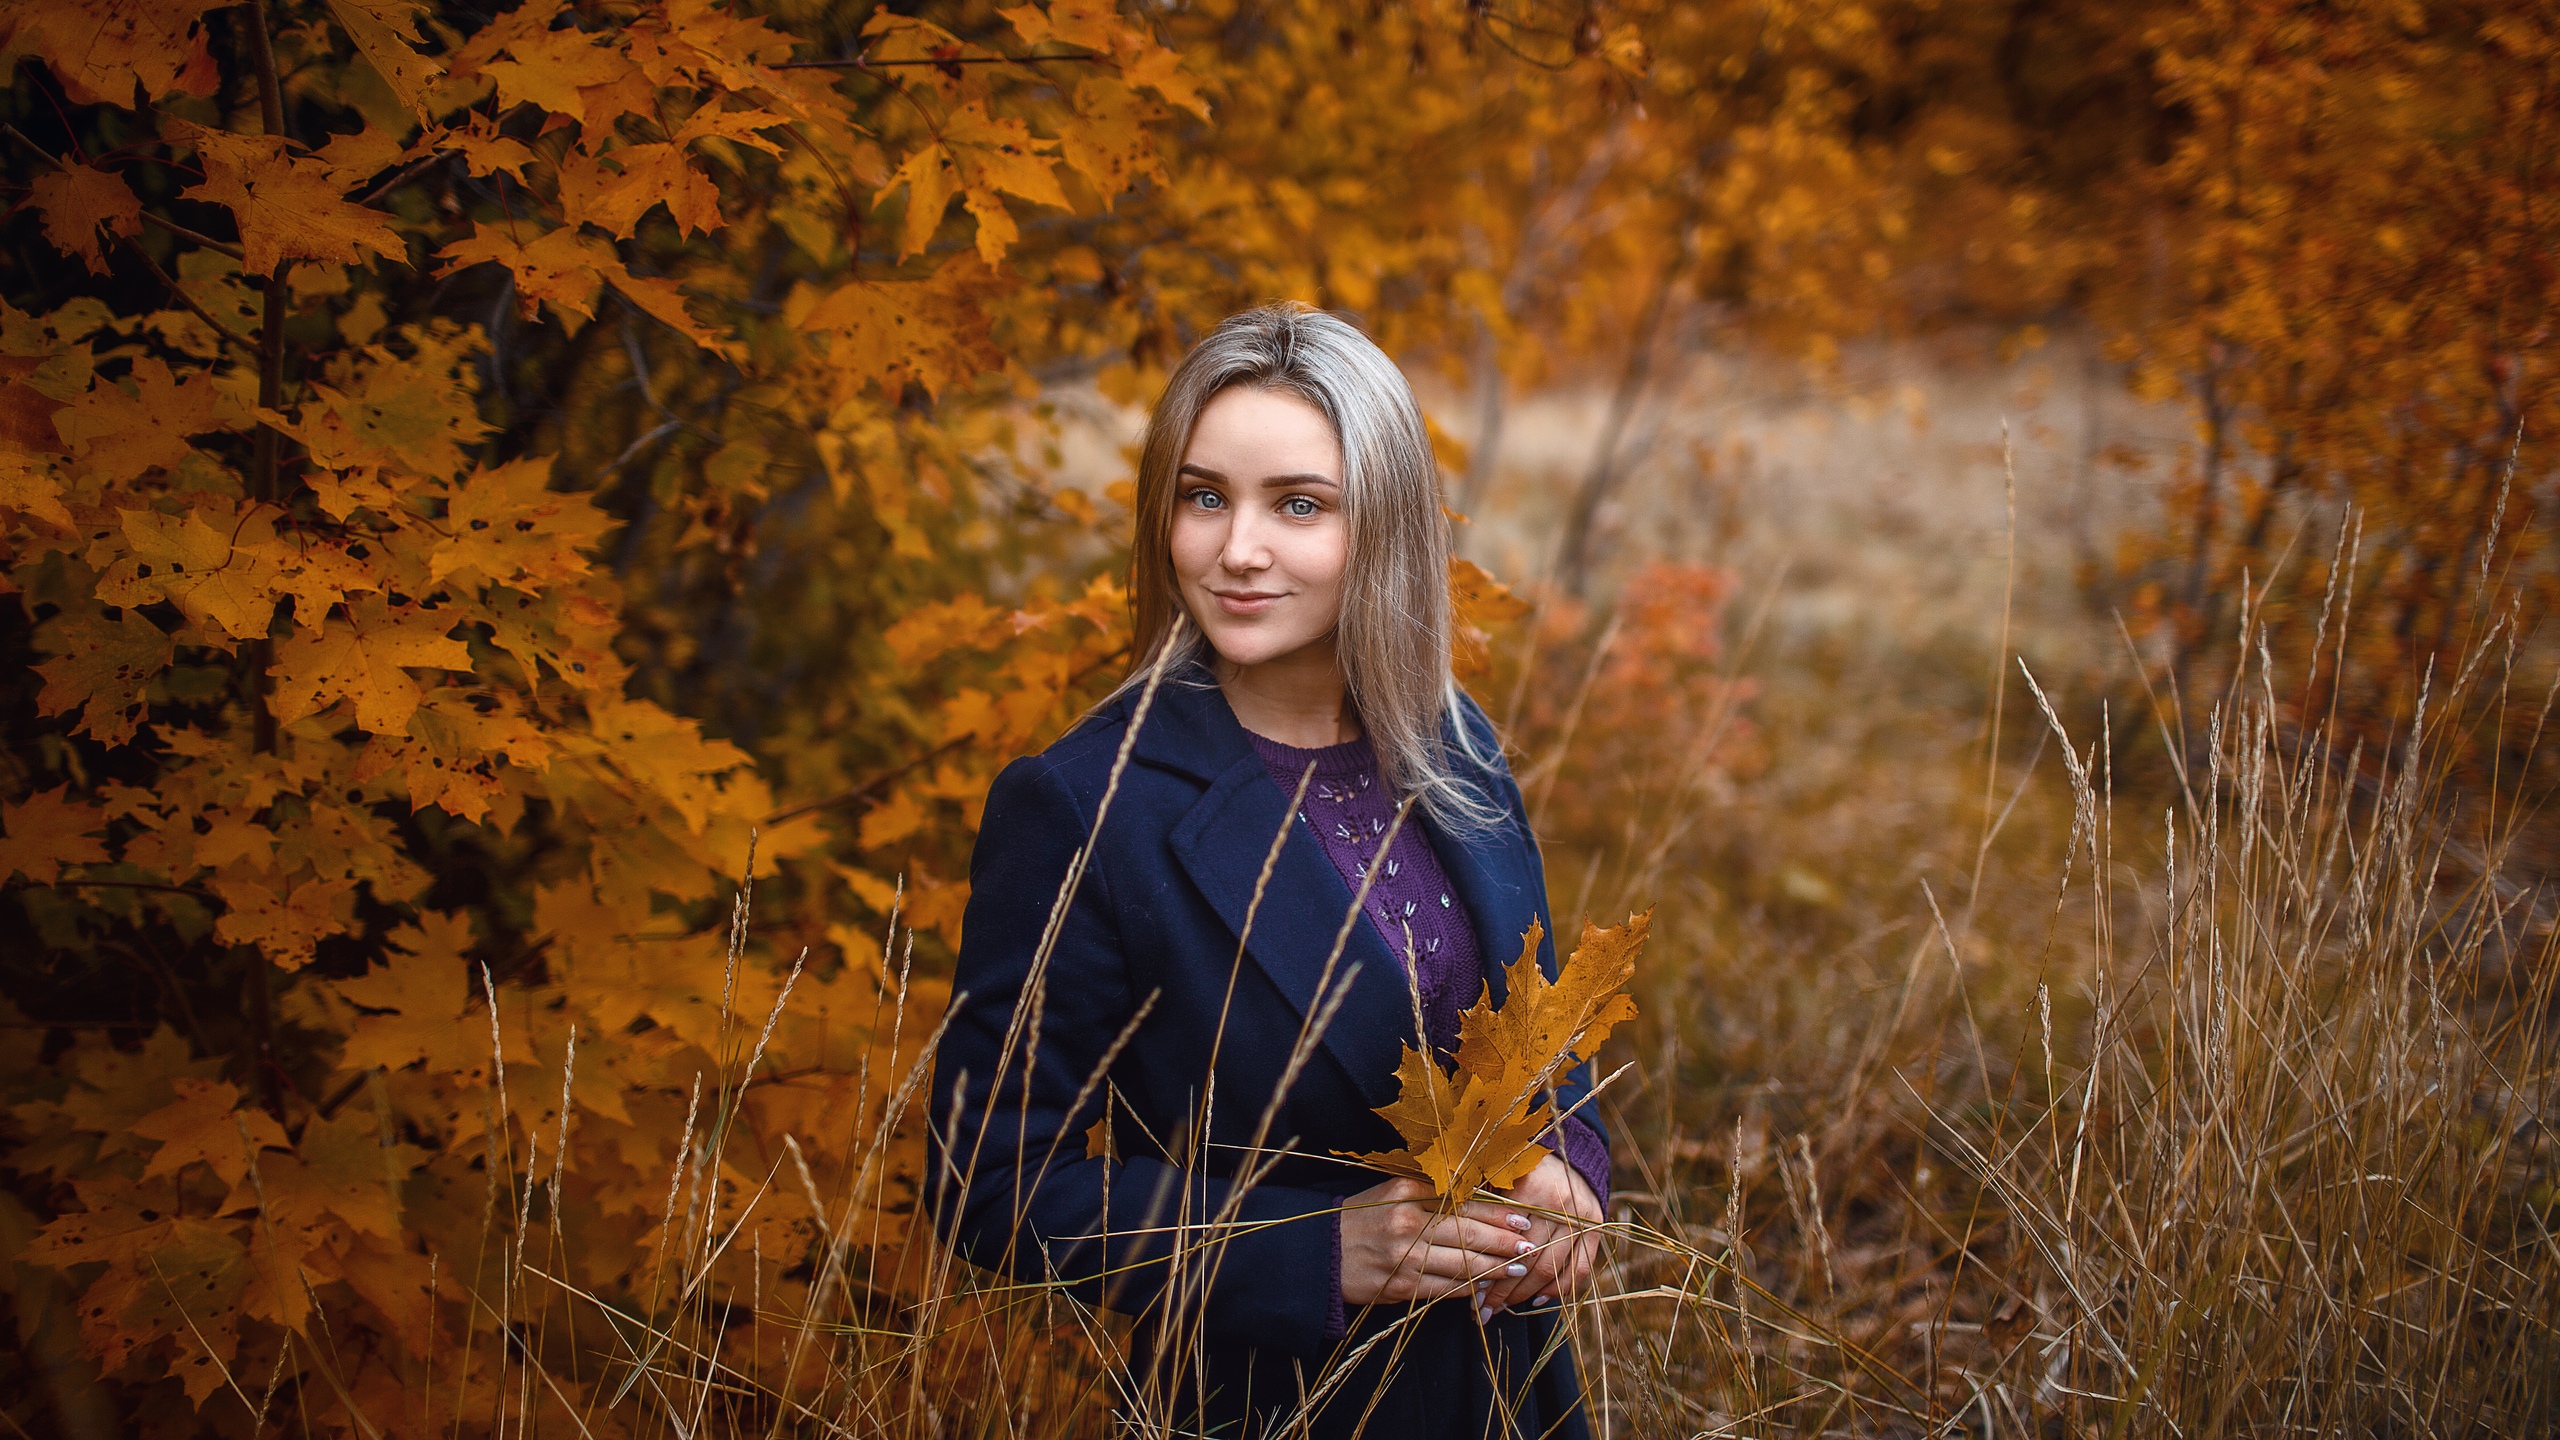 Sergey Sorokin Blonde Model Women Looking At Viewer Portrait Bokeh Depth Of Field Forest Outdoors Le 2560x1440